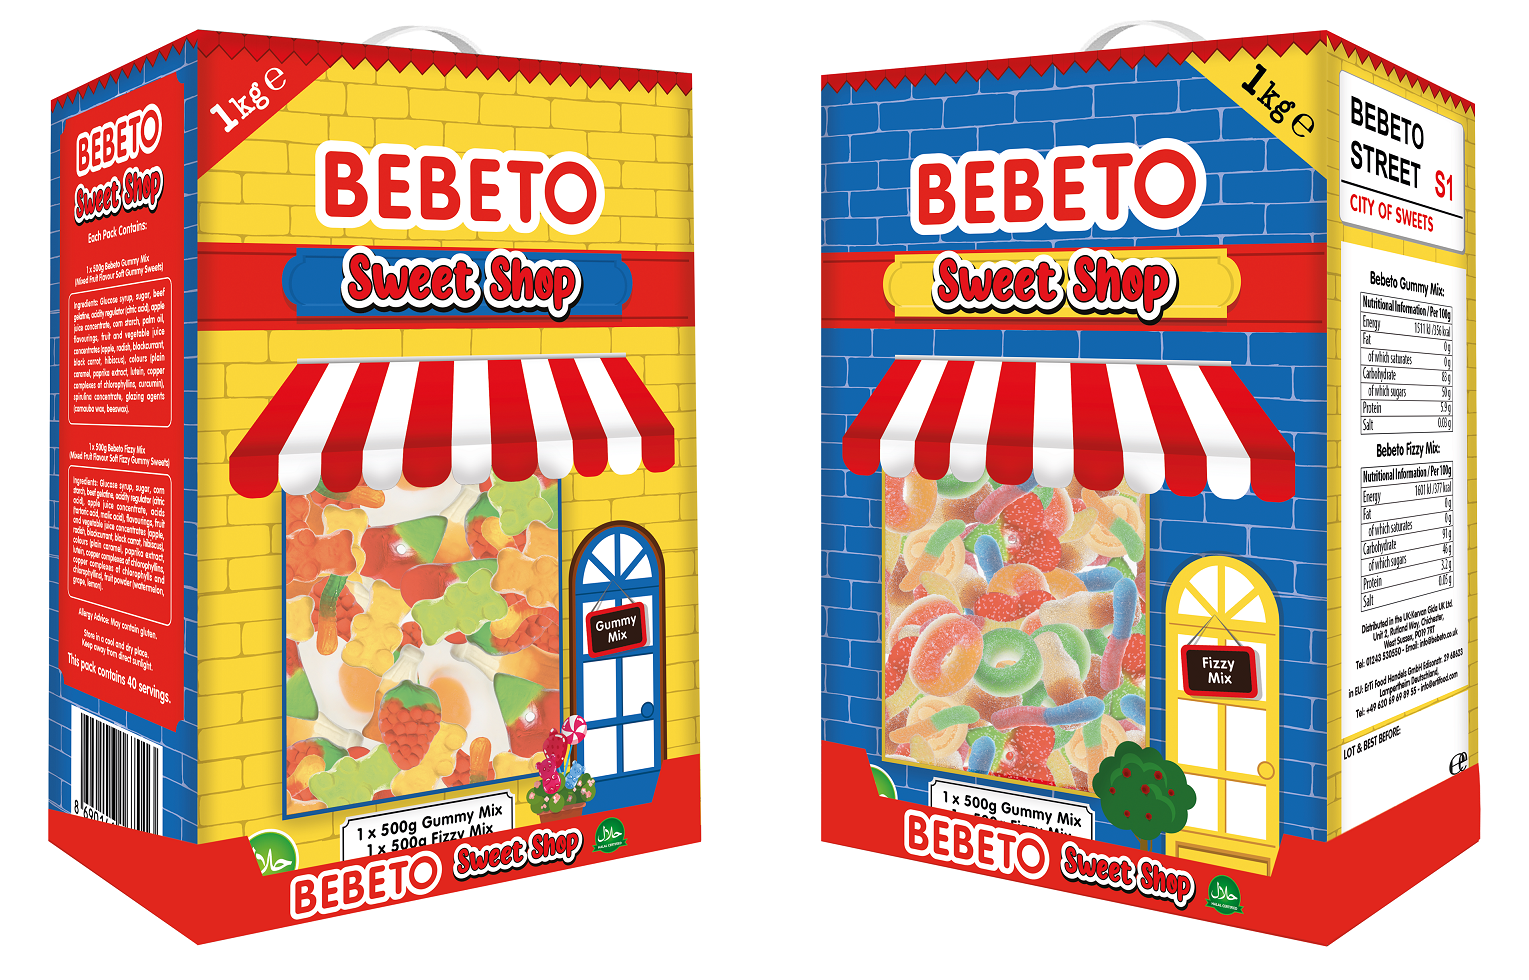 Bebeto enters Xmas confectionery market with 1KG ‘Bebeto Sweet Shop’